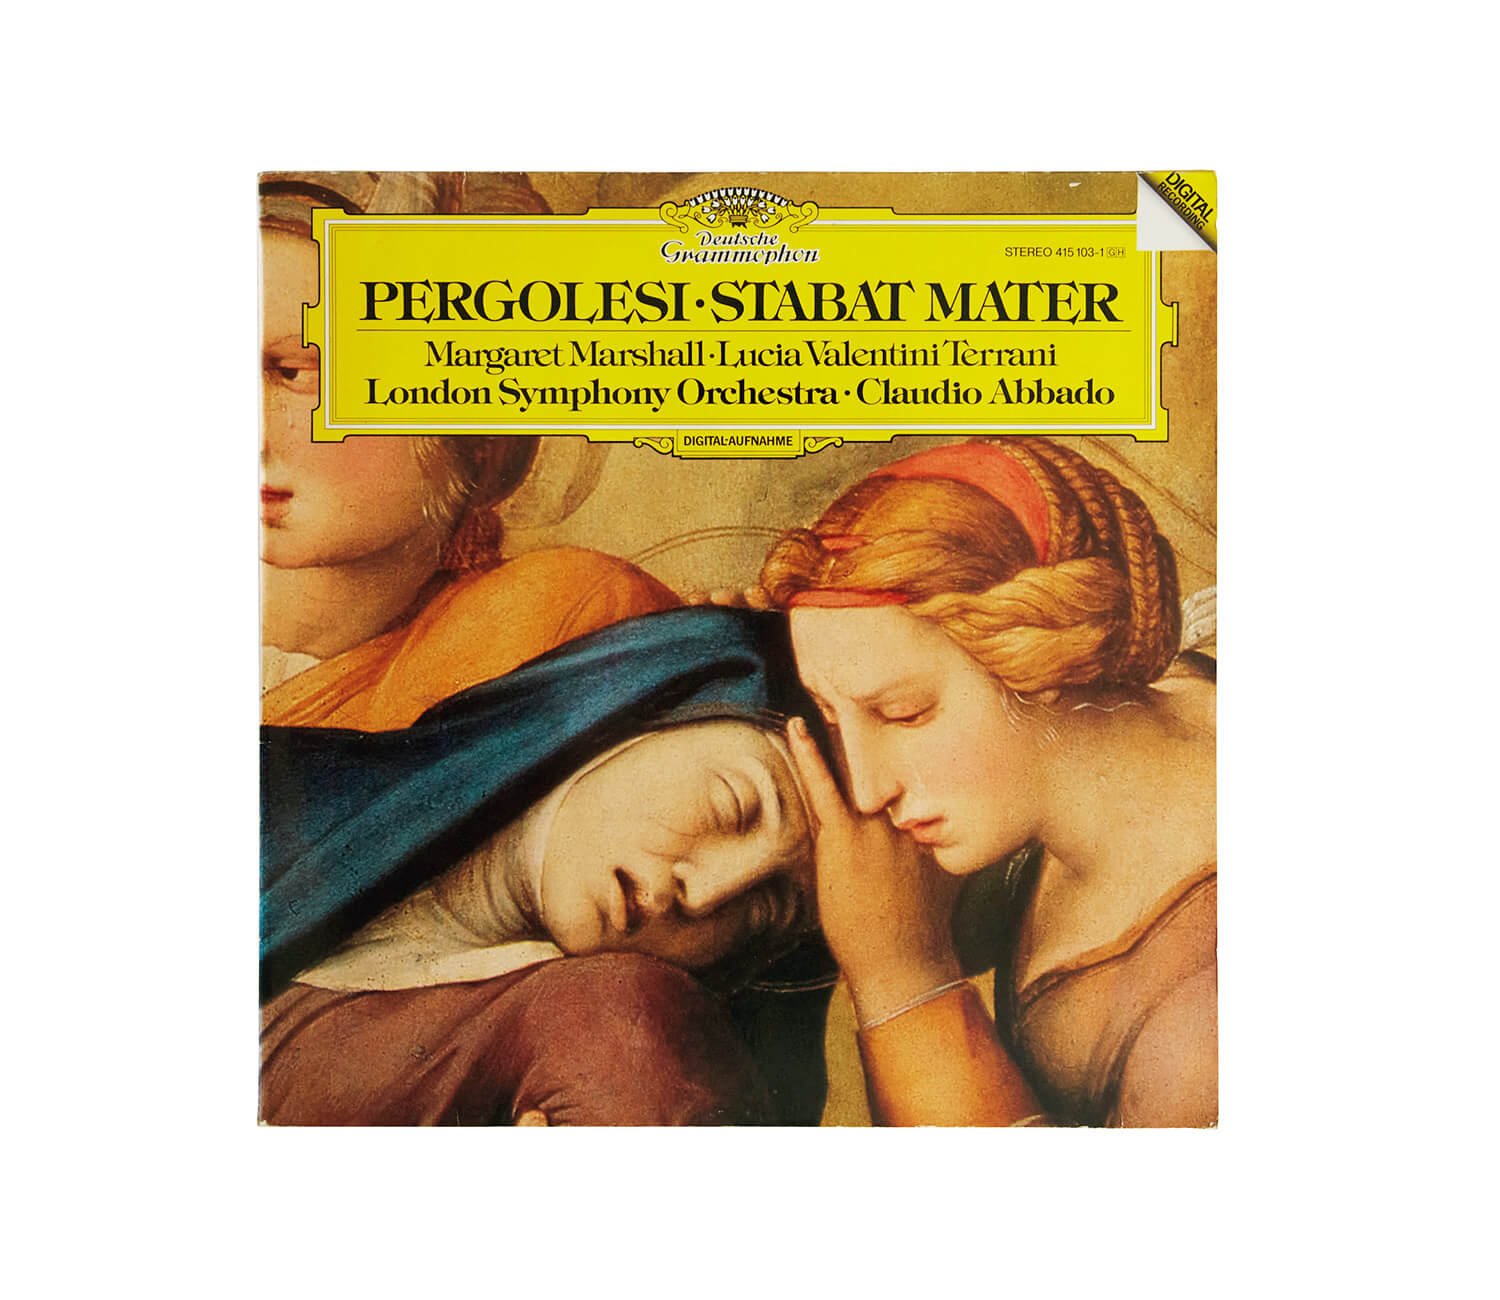 マーガレット・マーシャルとルチア・ヴァレンティーニ= テッラーニが演奏した、ペルゴレージ「スターバト・マーテル」レコードジャケット